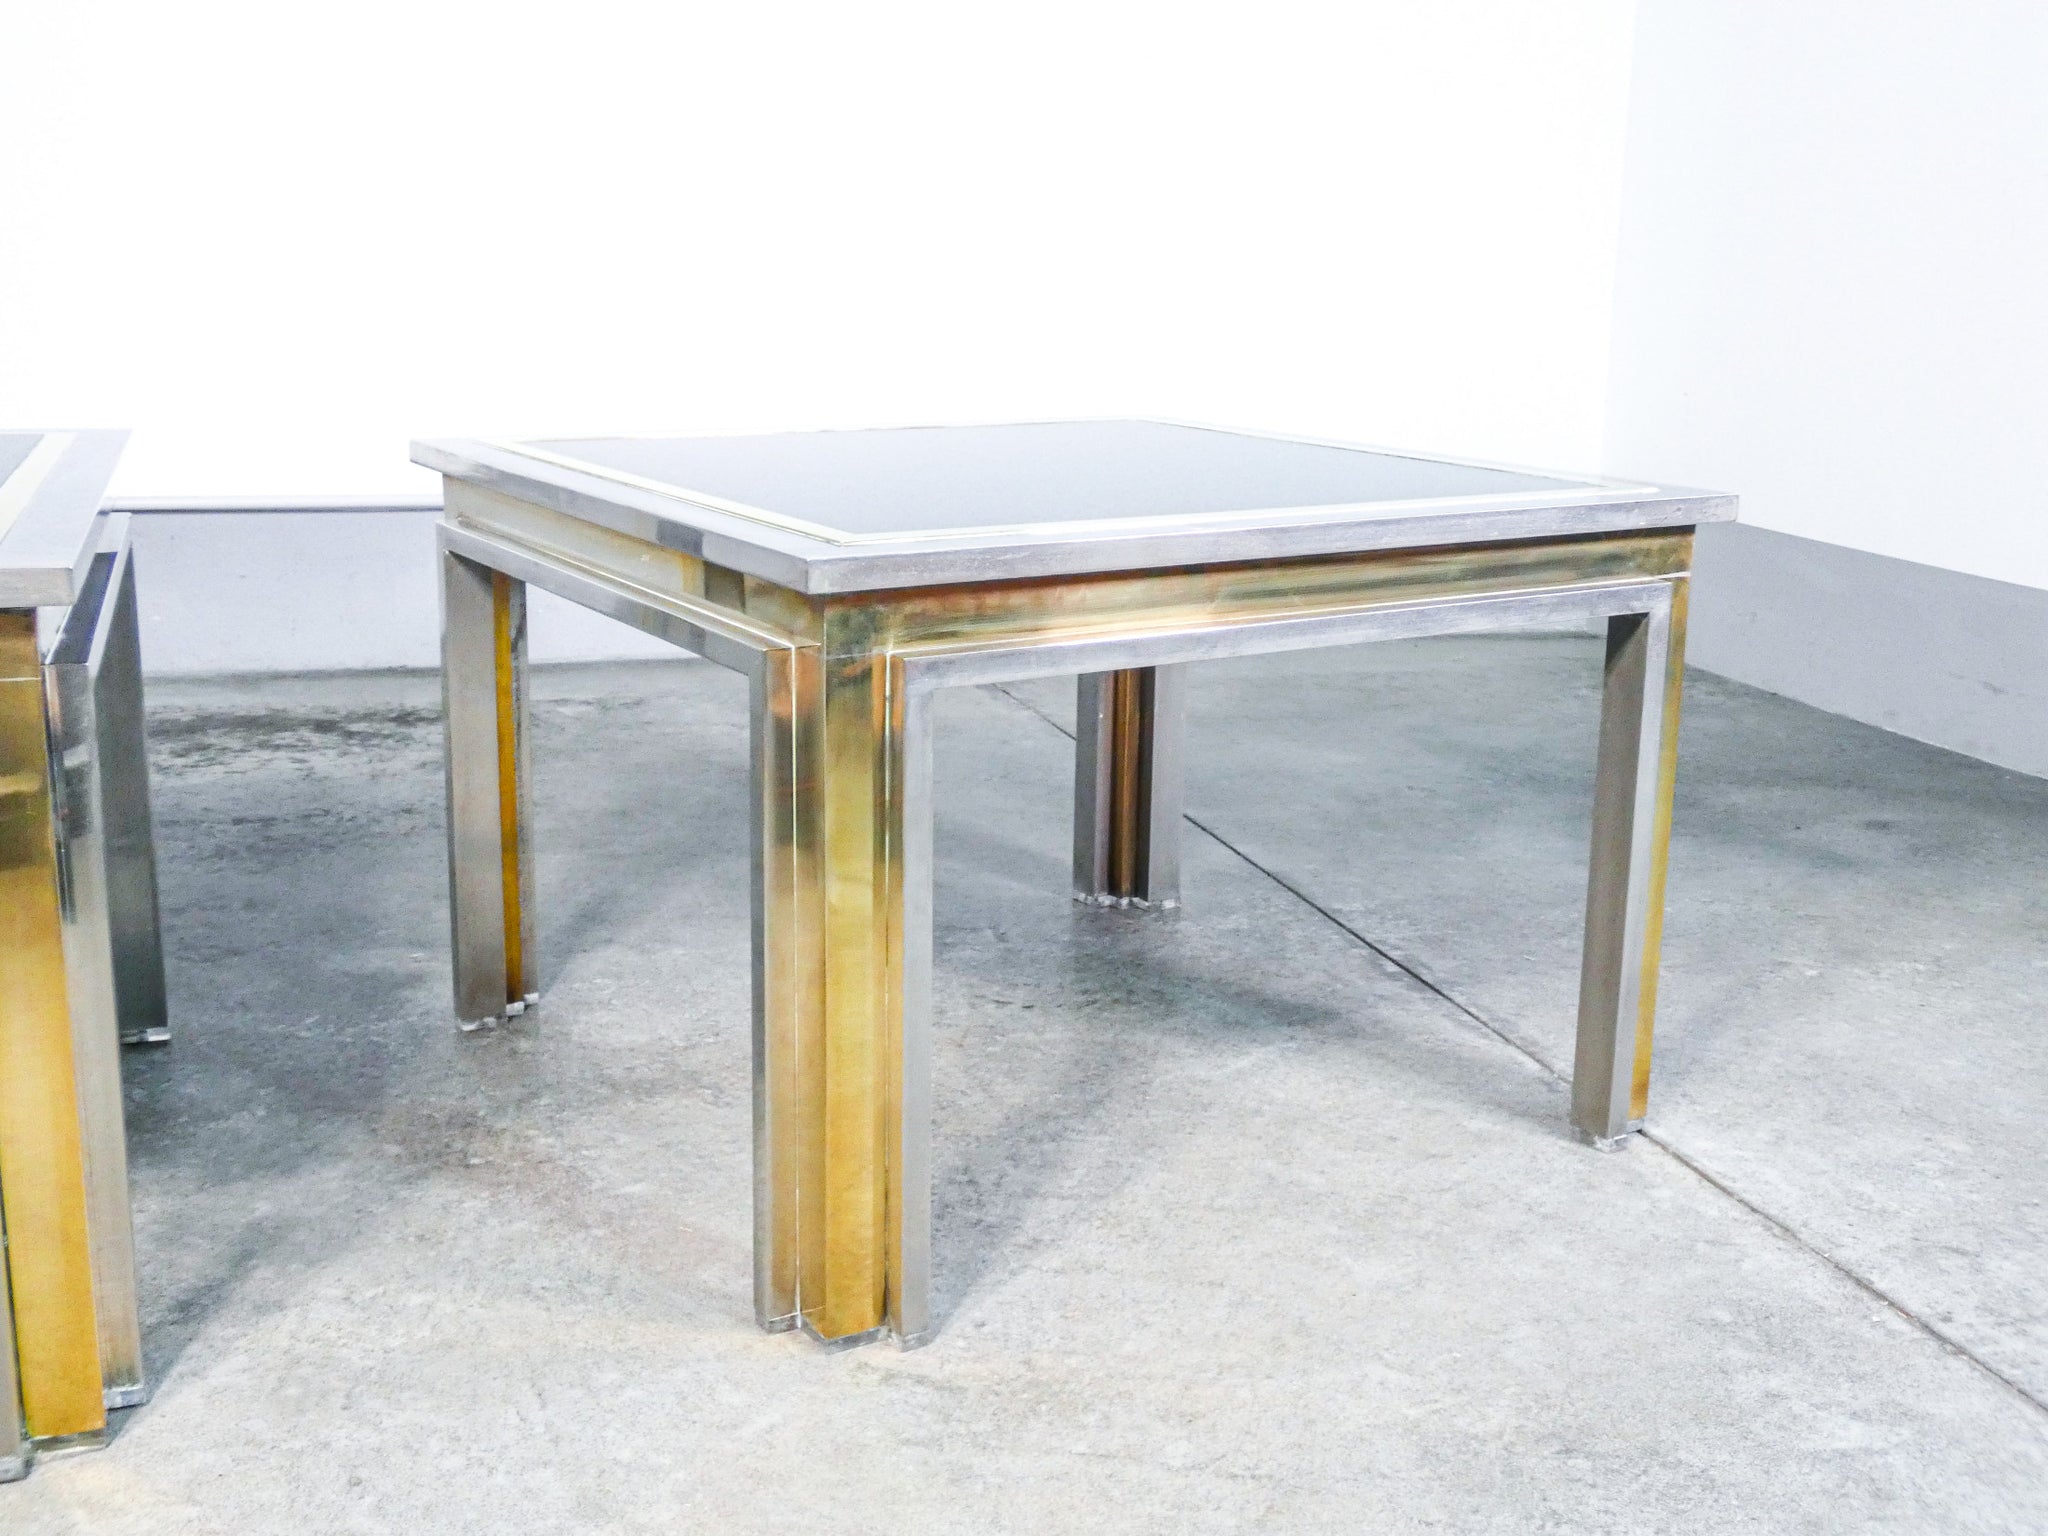 coppia tavolini salotto design romeo rega caffe tavolo basso coffee table italy